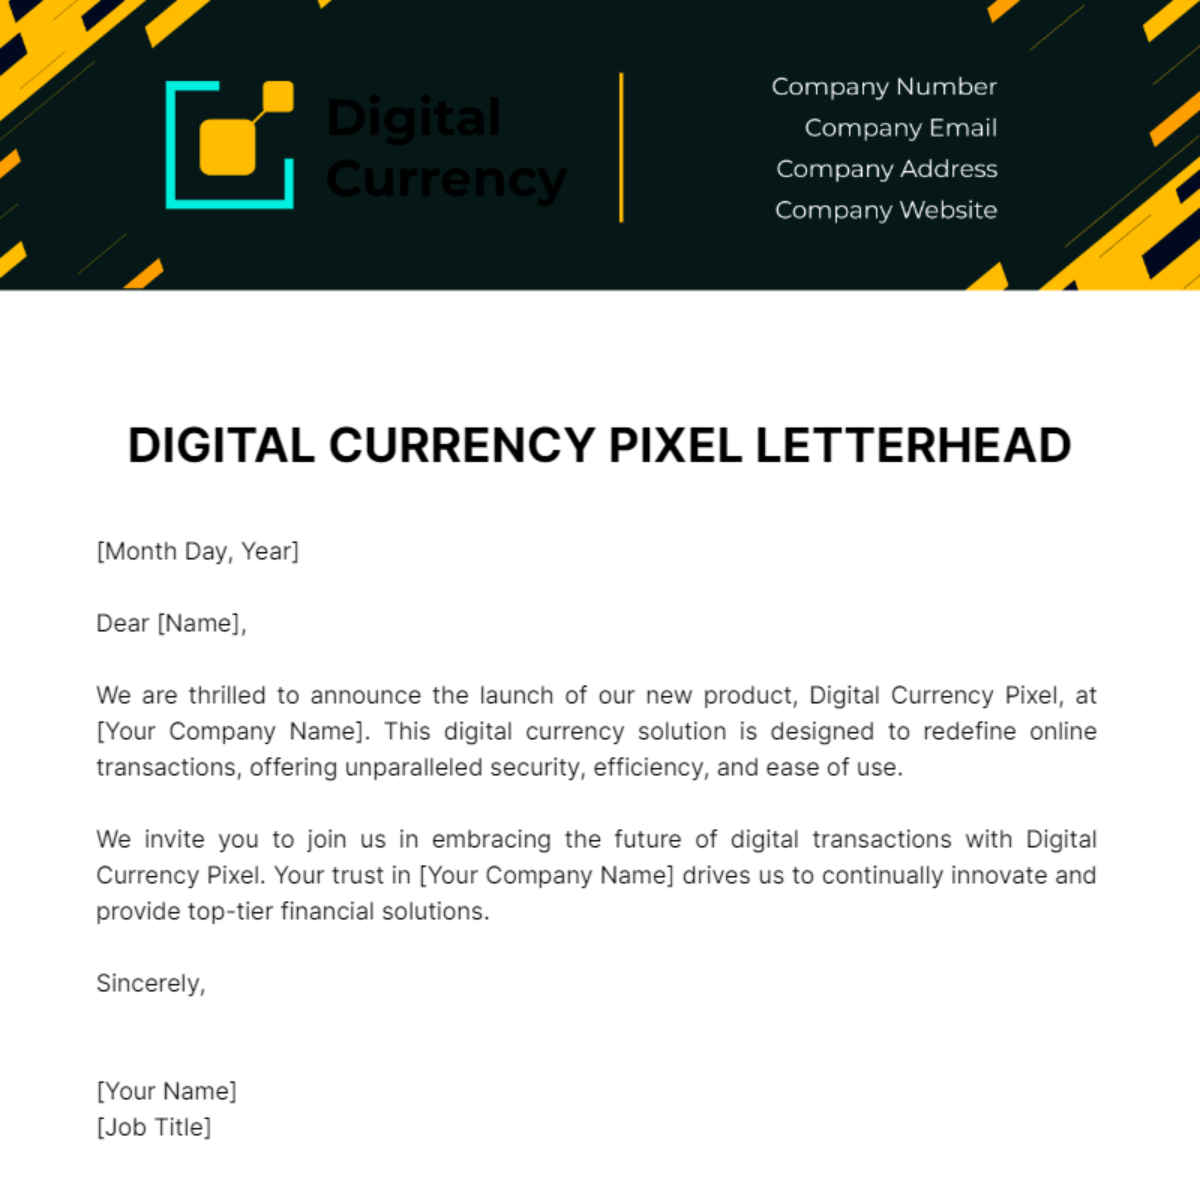 Digital Currency Pixel Letterhead Template